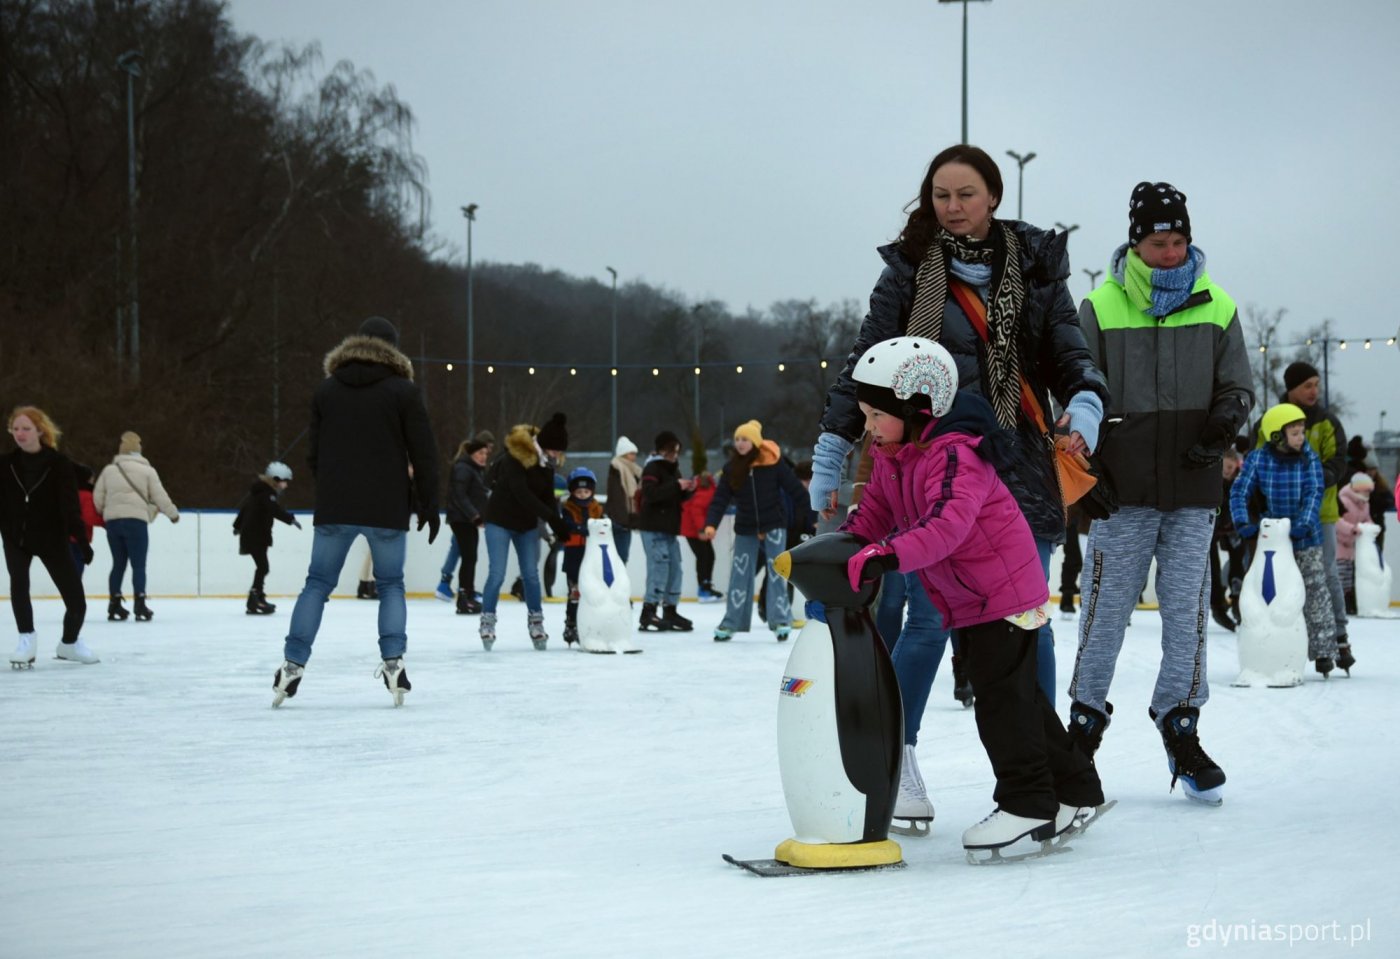 Dzieci jeżdżące na łyżwach na gdyńskim lodowisku